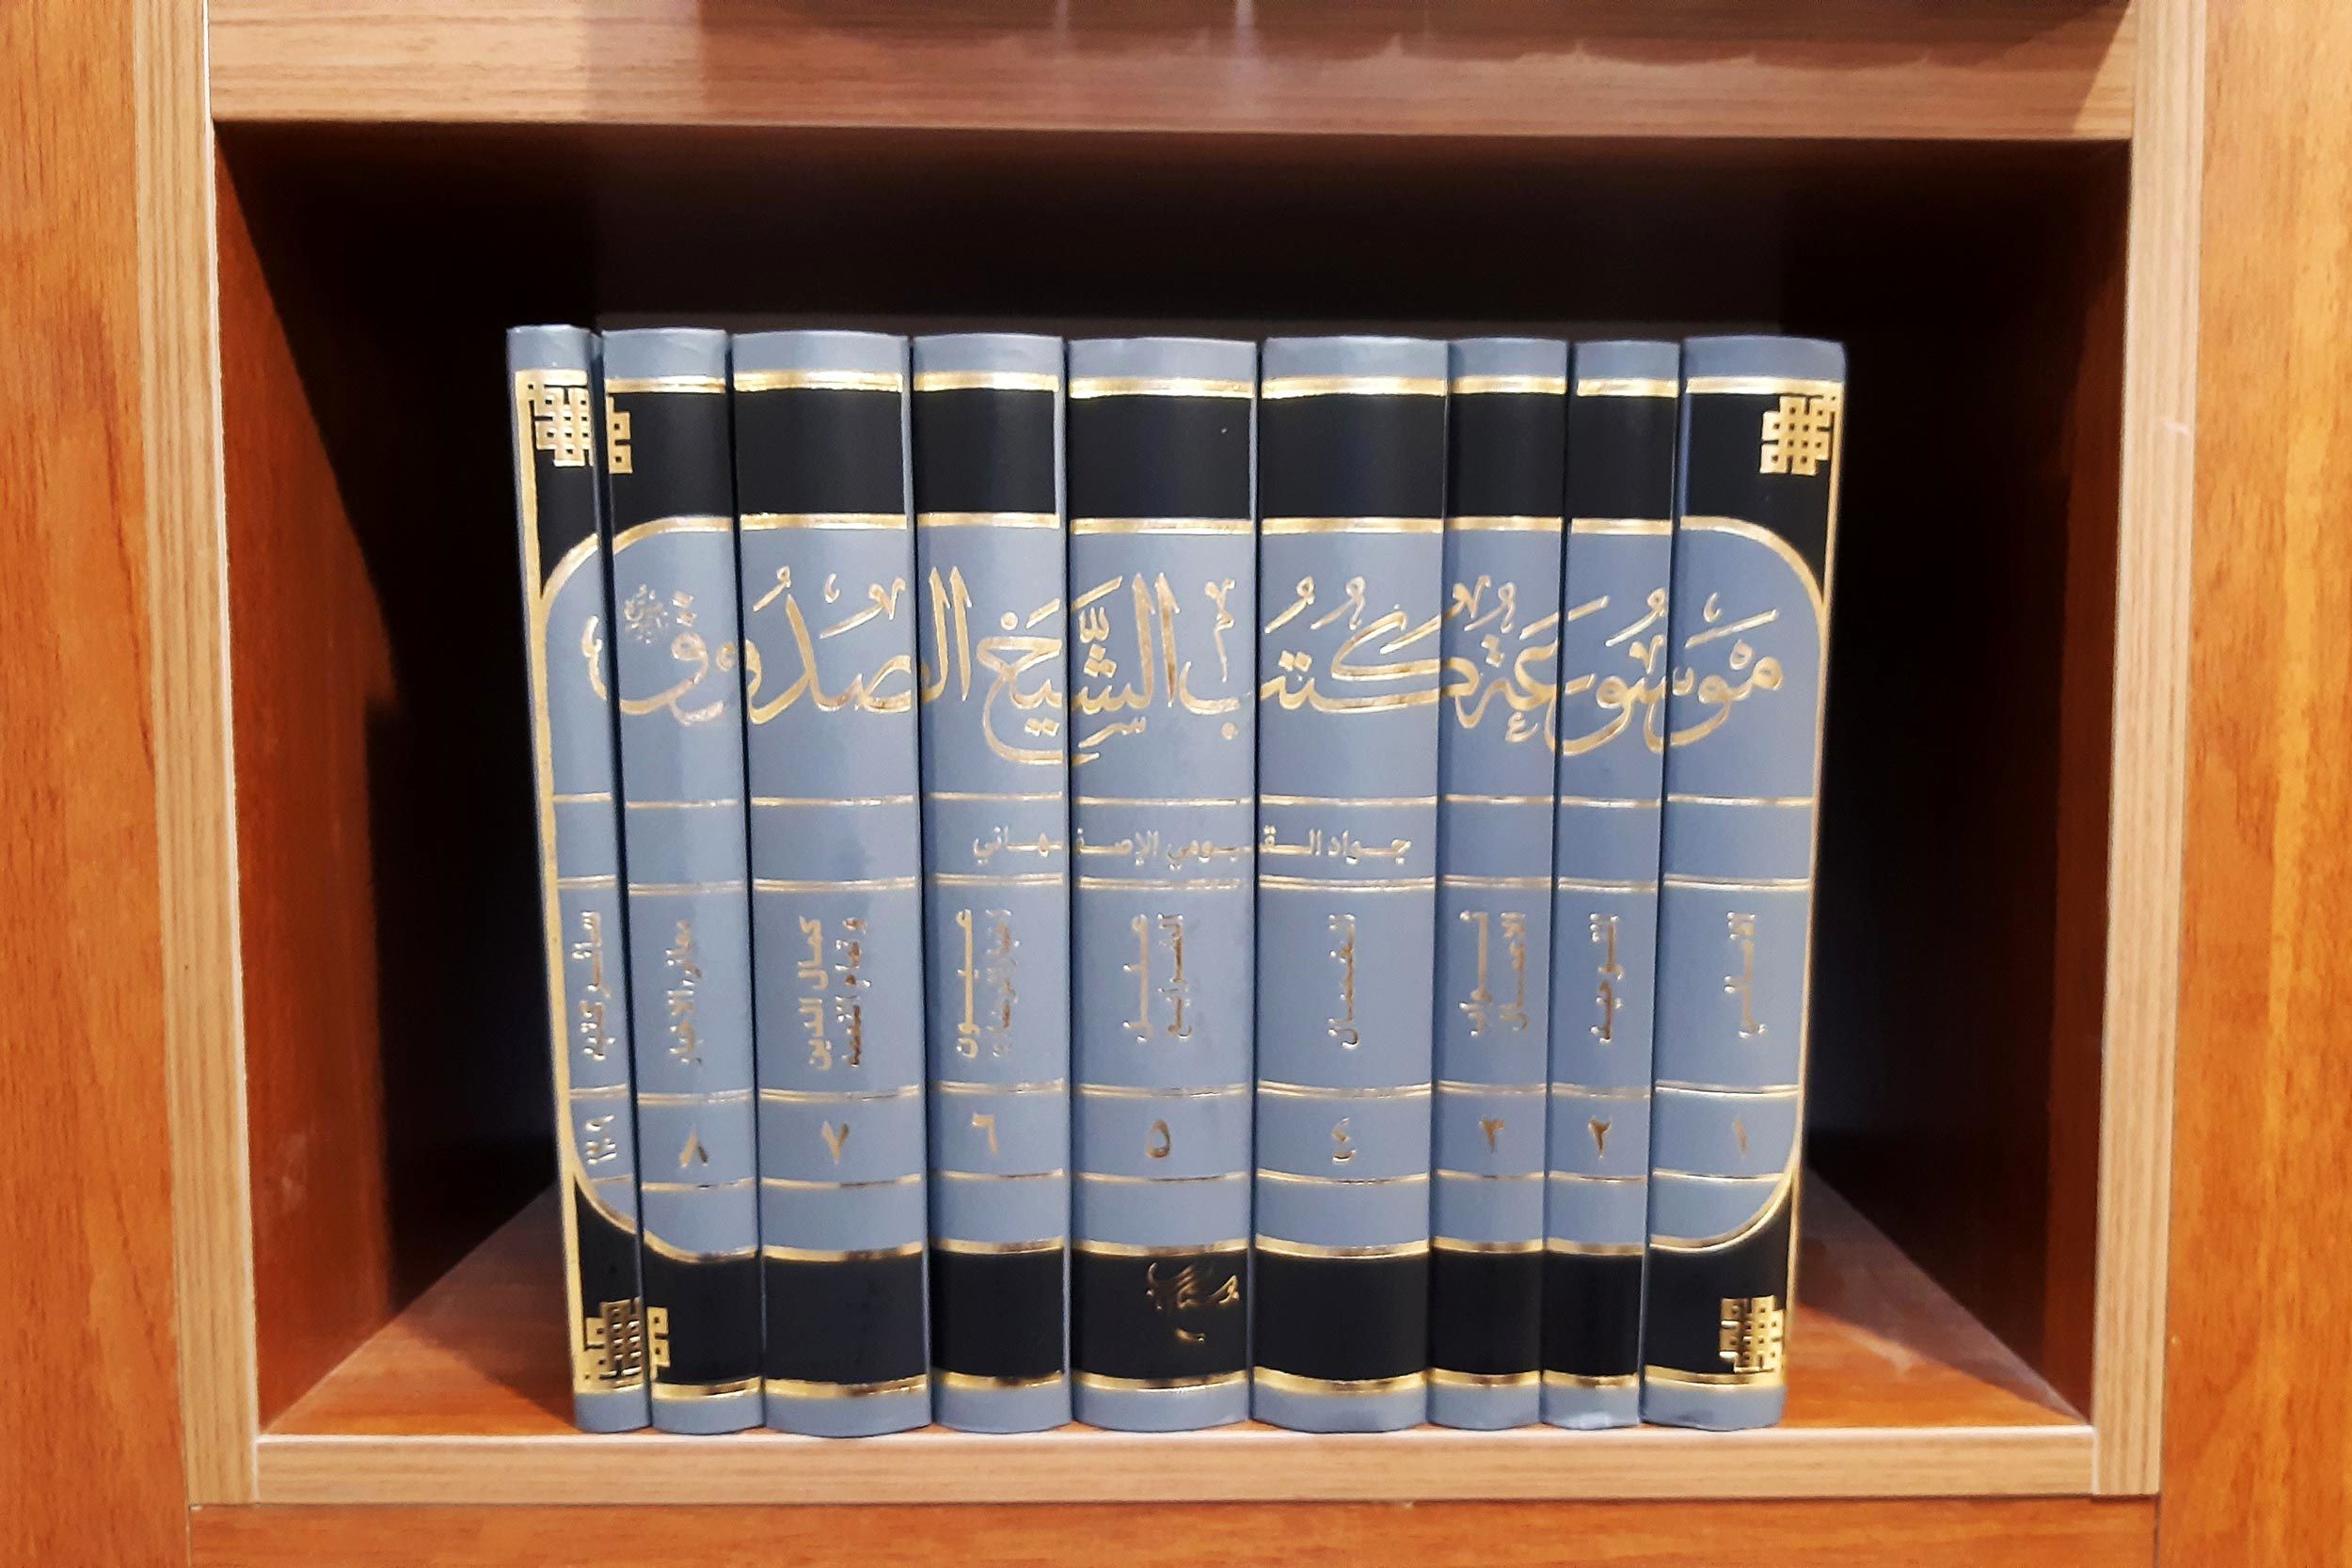 موسوعه ۱۲ جلدی کتب الشیخ الصدوق در دسترس علاقمندان قرار گرفت